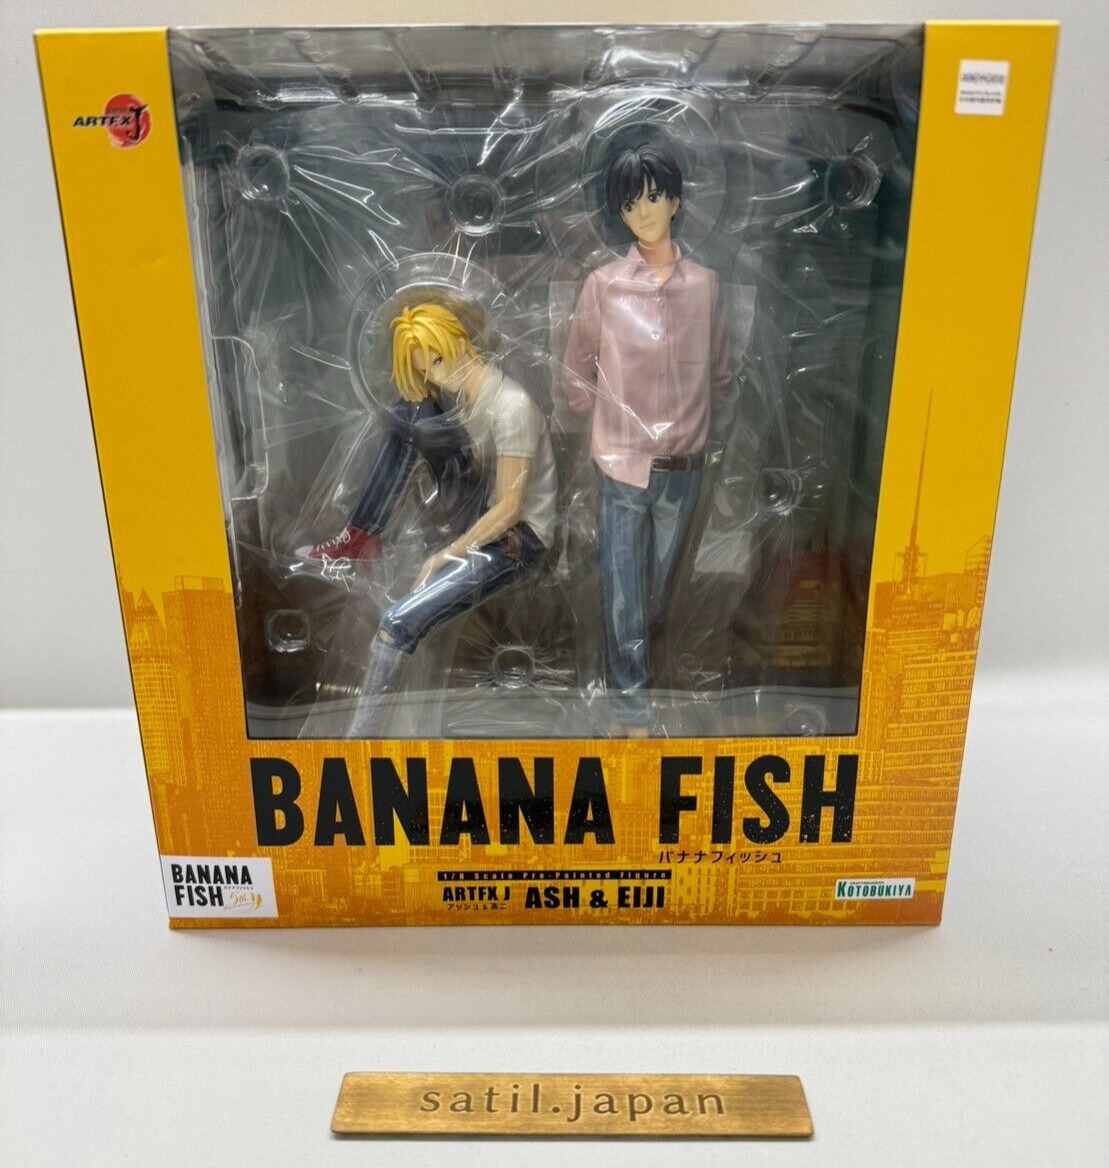 Kotobuyika Banana Fish ARTFX J Ash & Eiji 1/8 Figure Japan